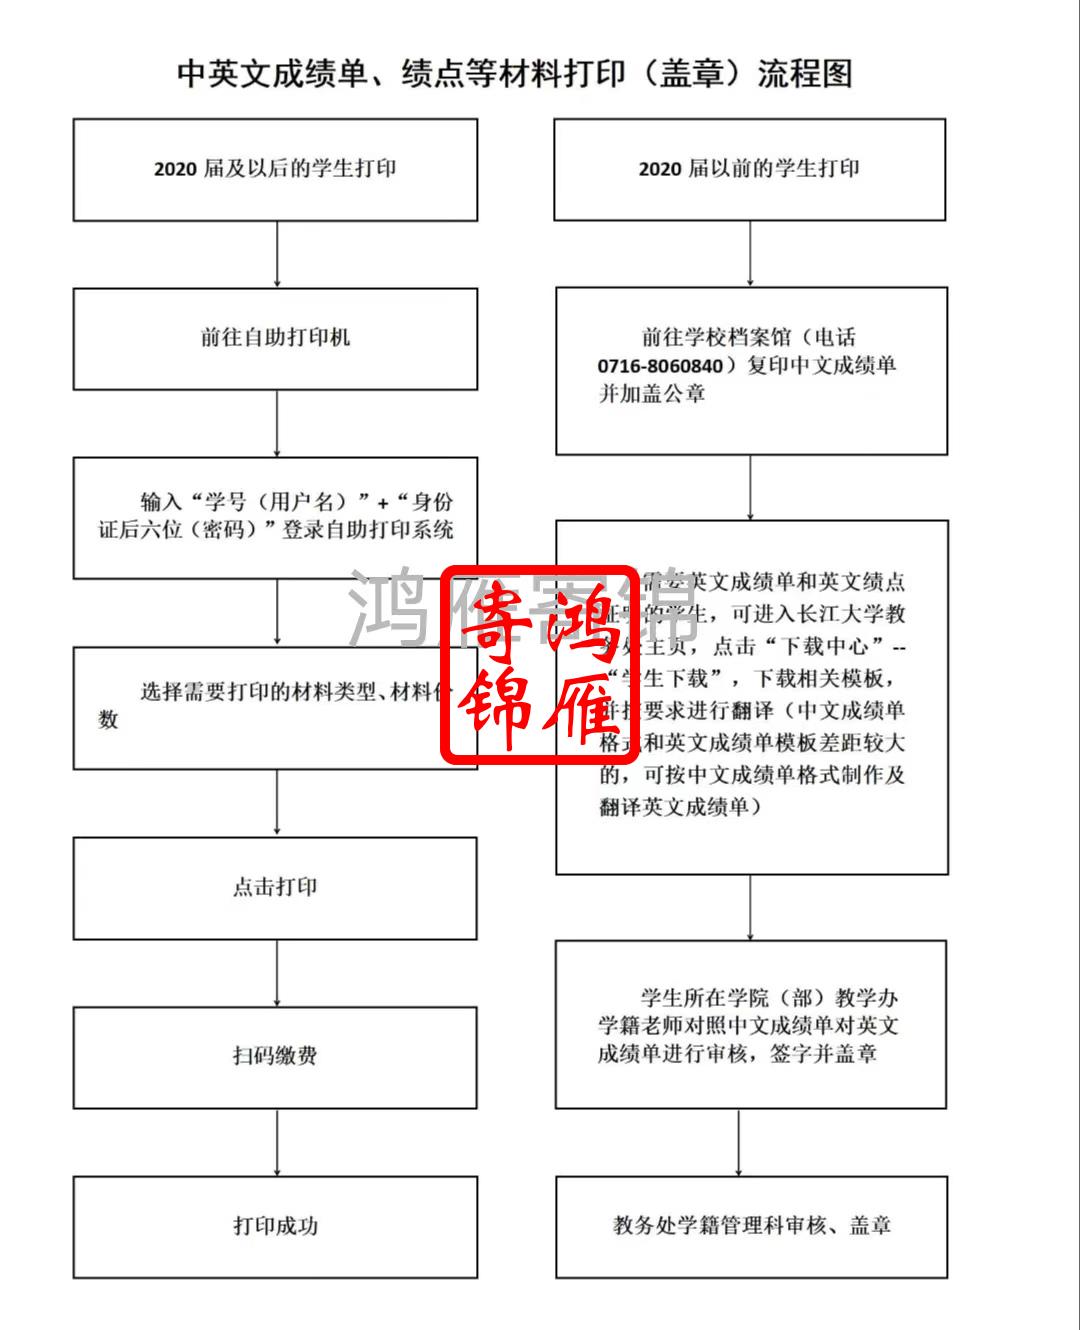 长江大学中英文成绩单绩点证明打印流程.jpg